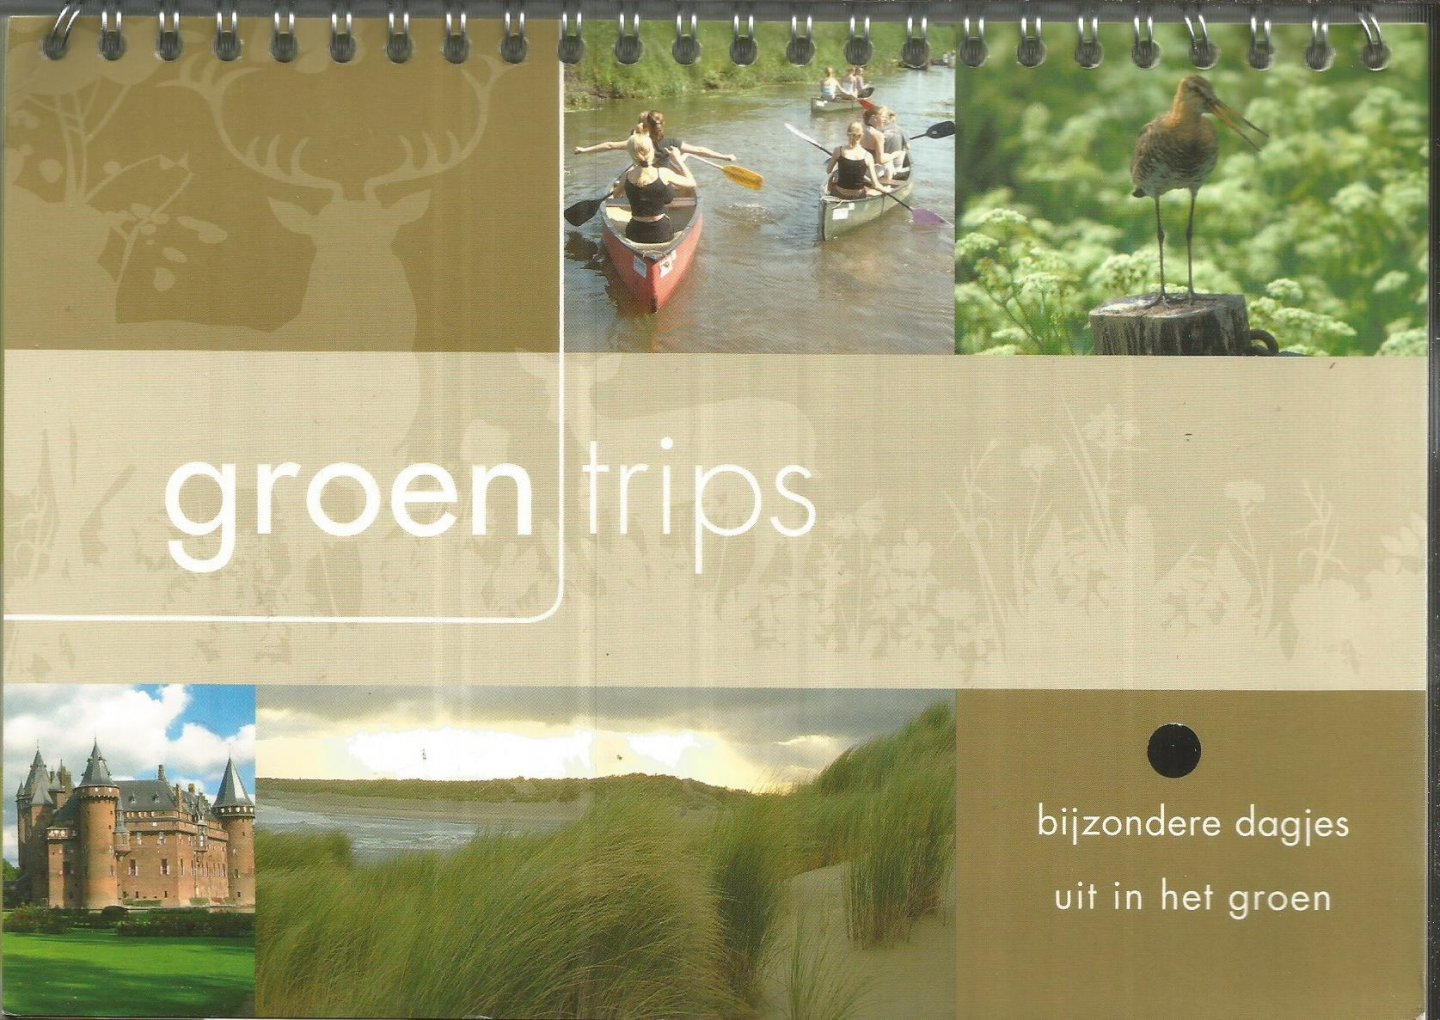 Tekstbron - Groentrips - bijzondere dagjes in het groen in alle Nederlandse provincies